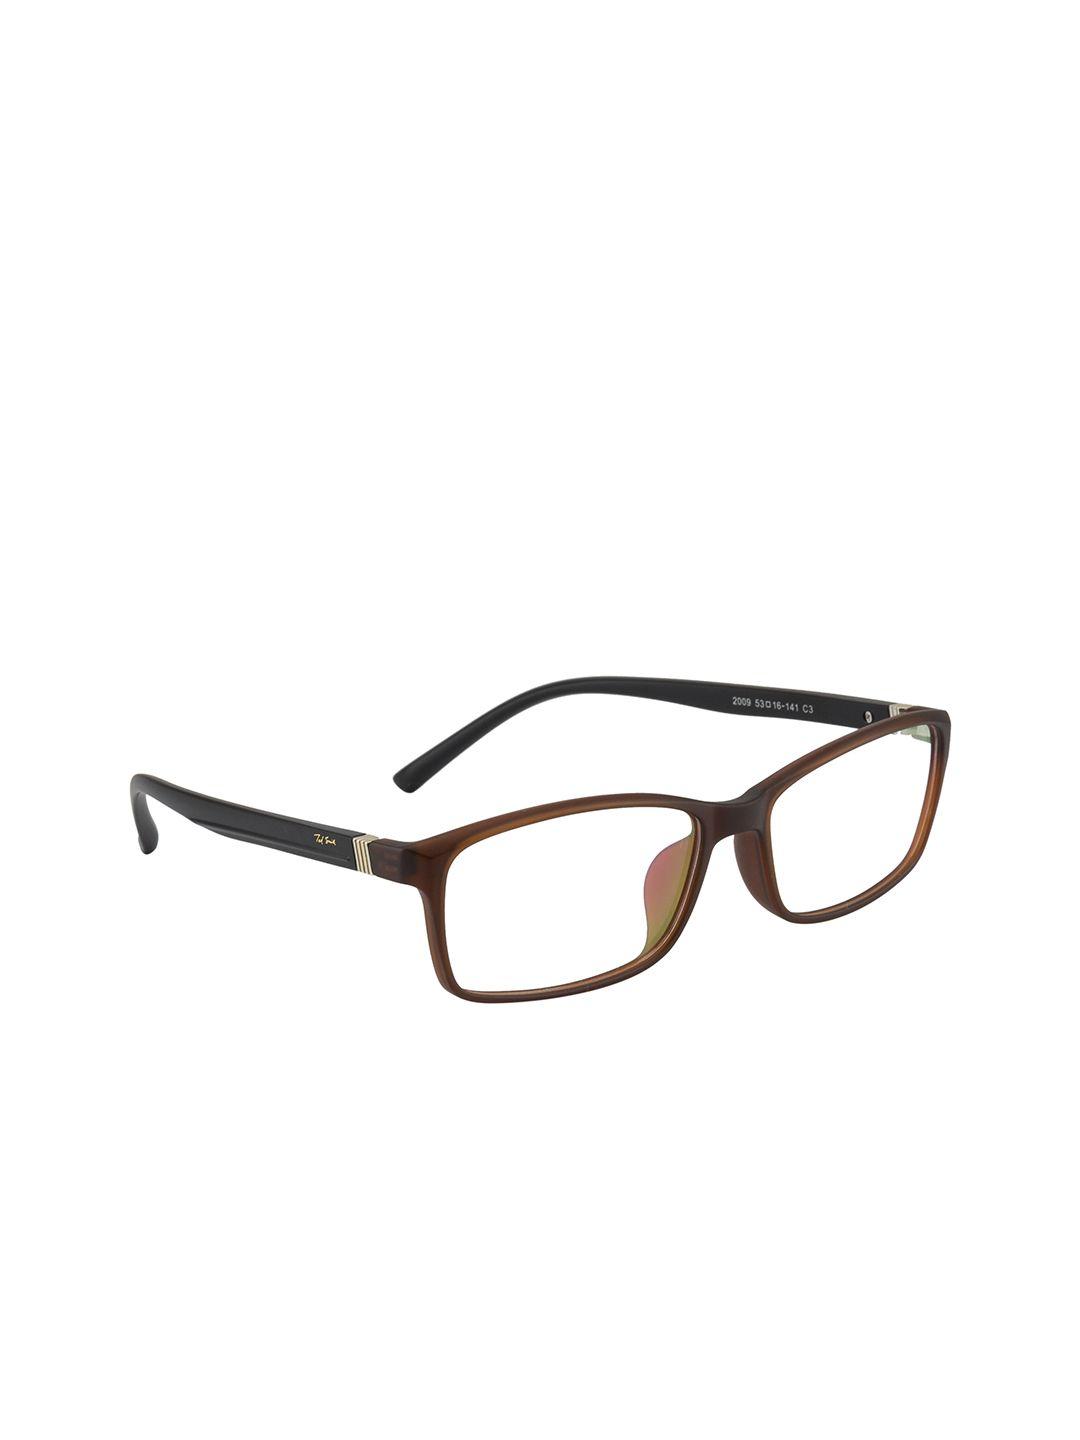 ted smith unisex brown & black full rim rectangle frames eyeglasses